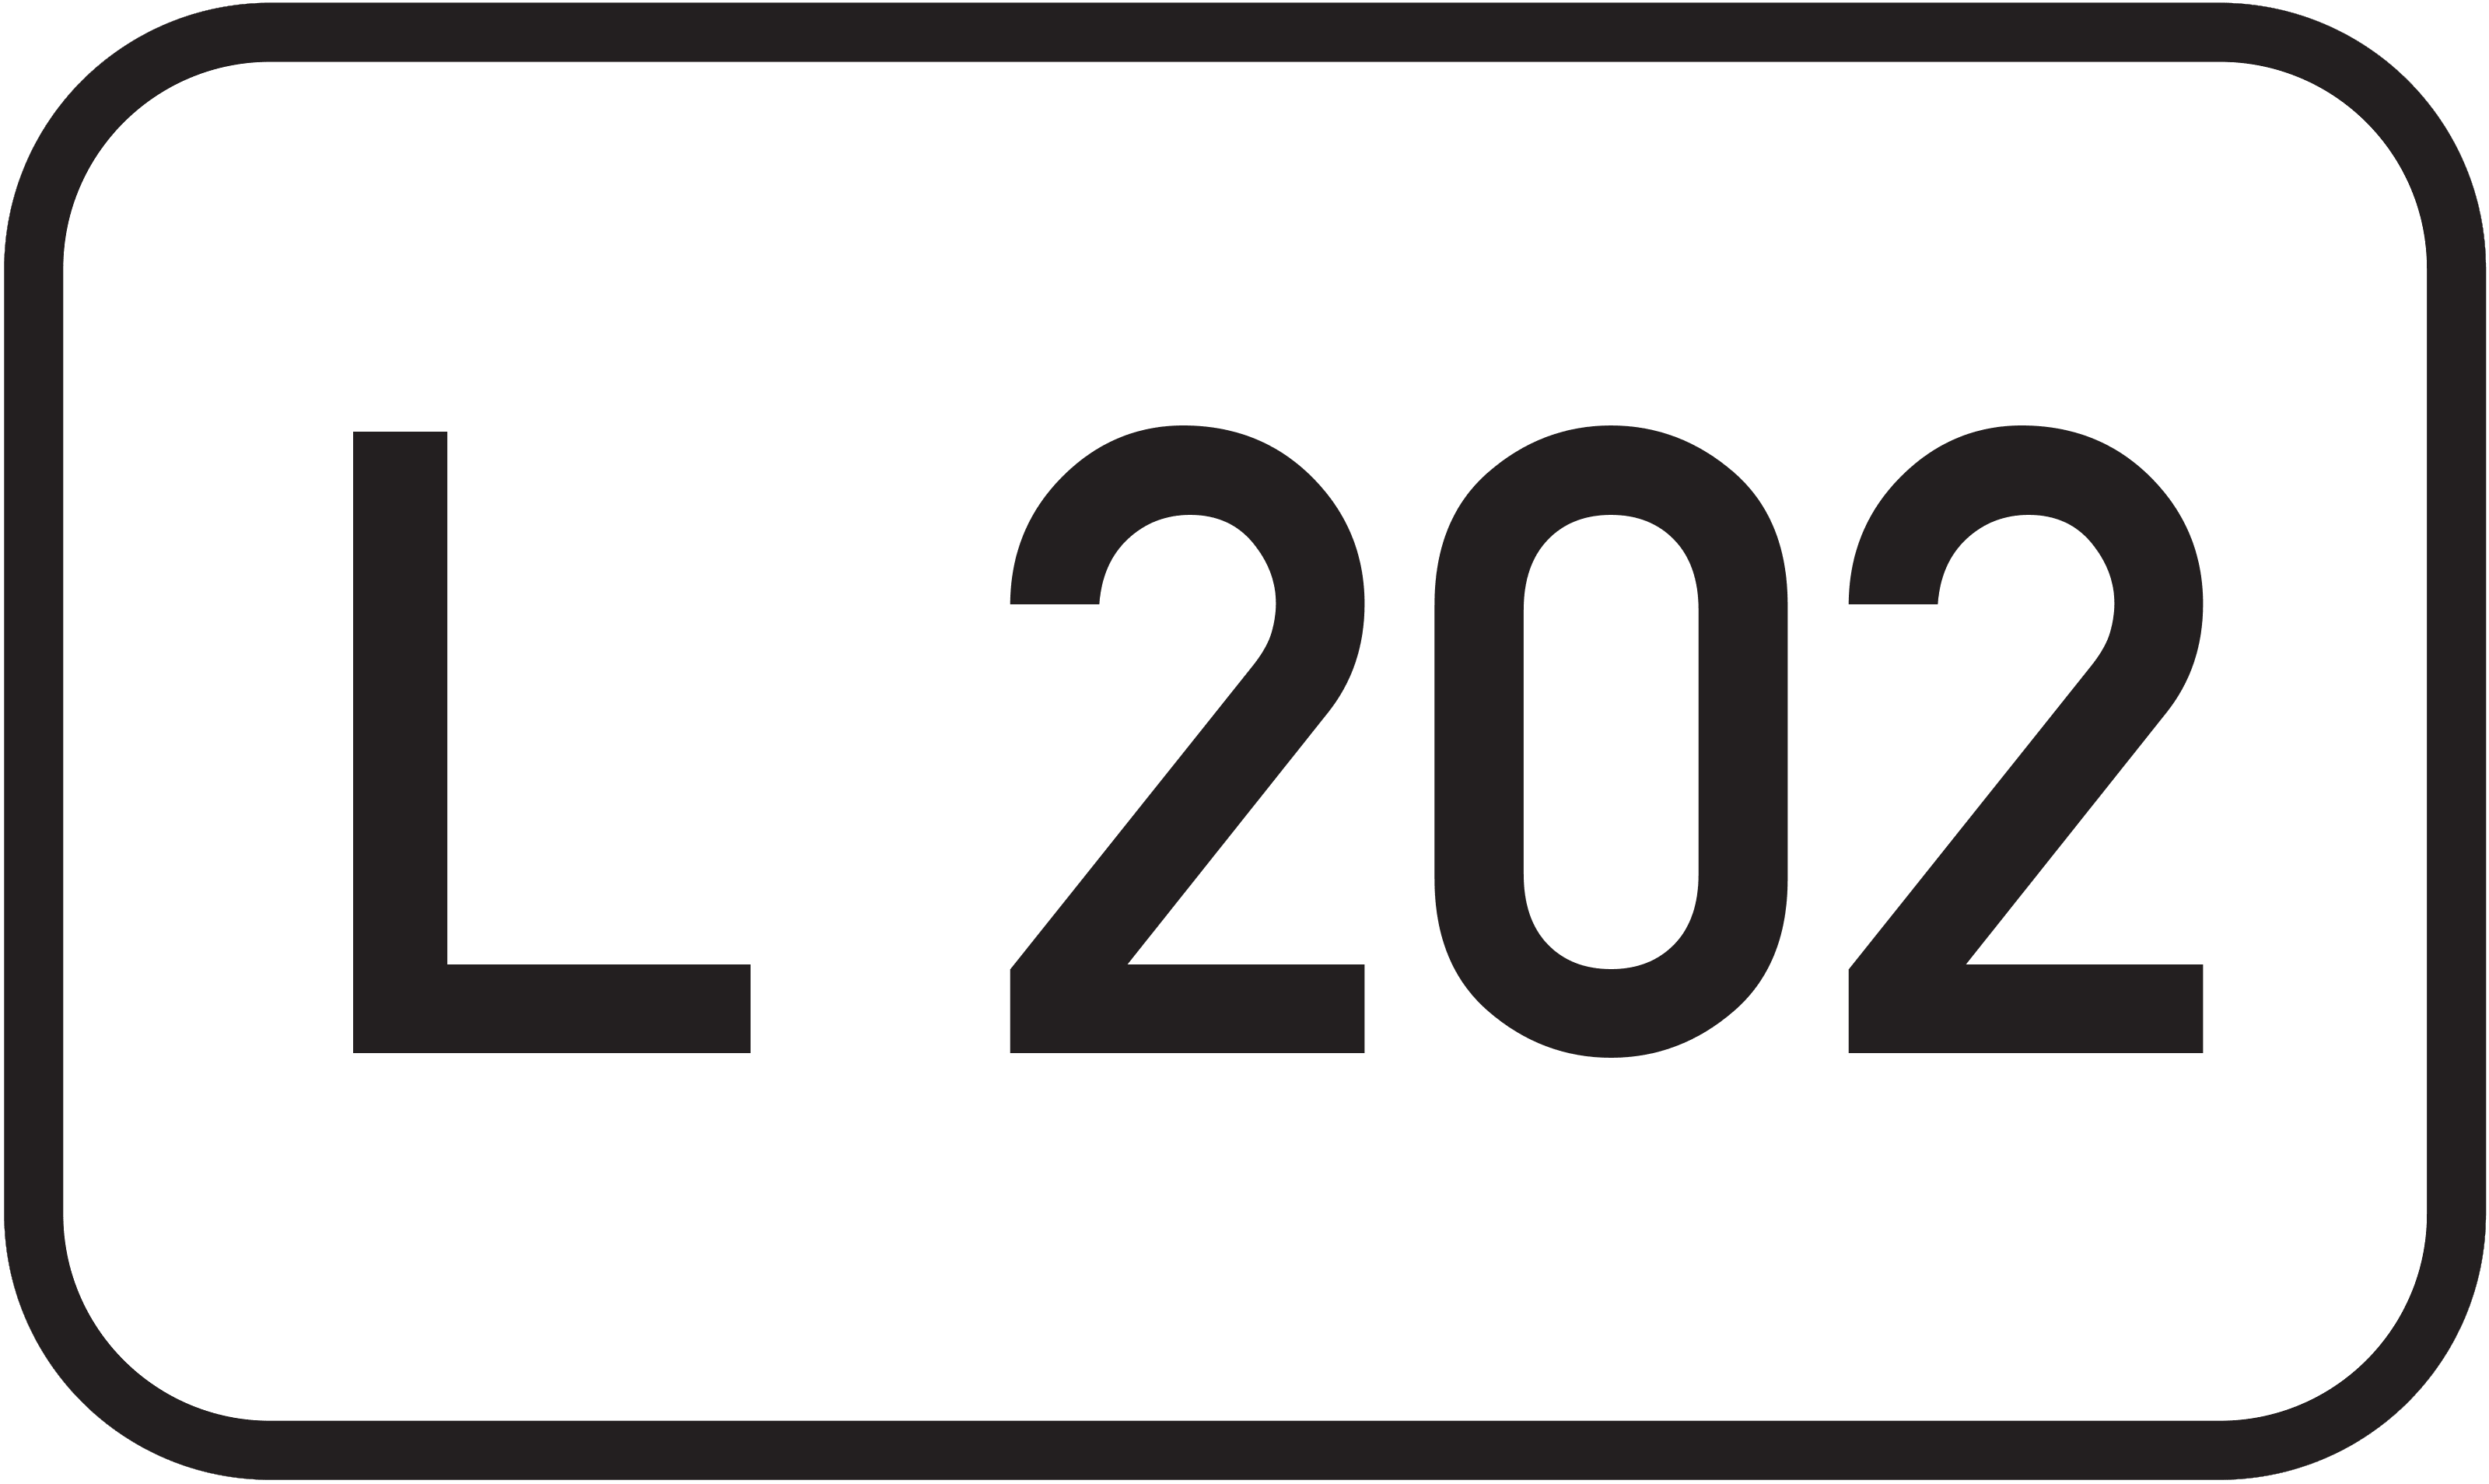 Landesstraße L 202